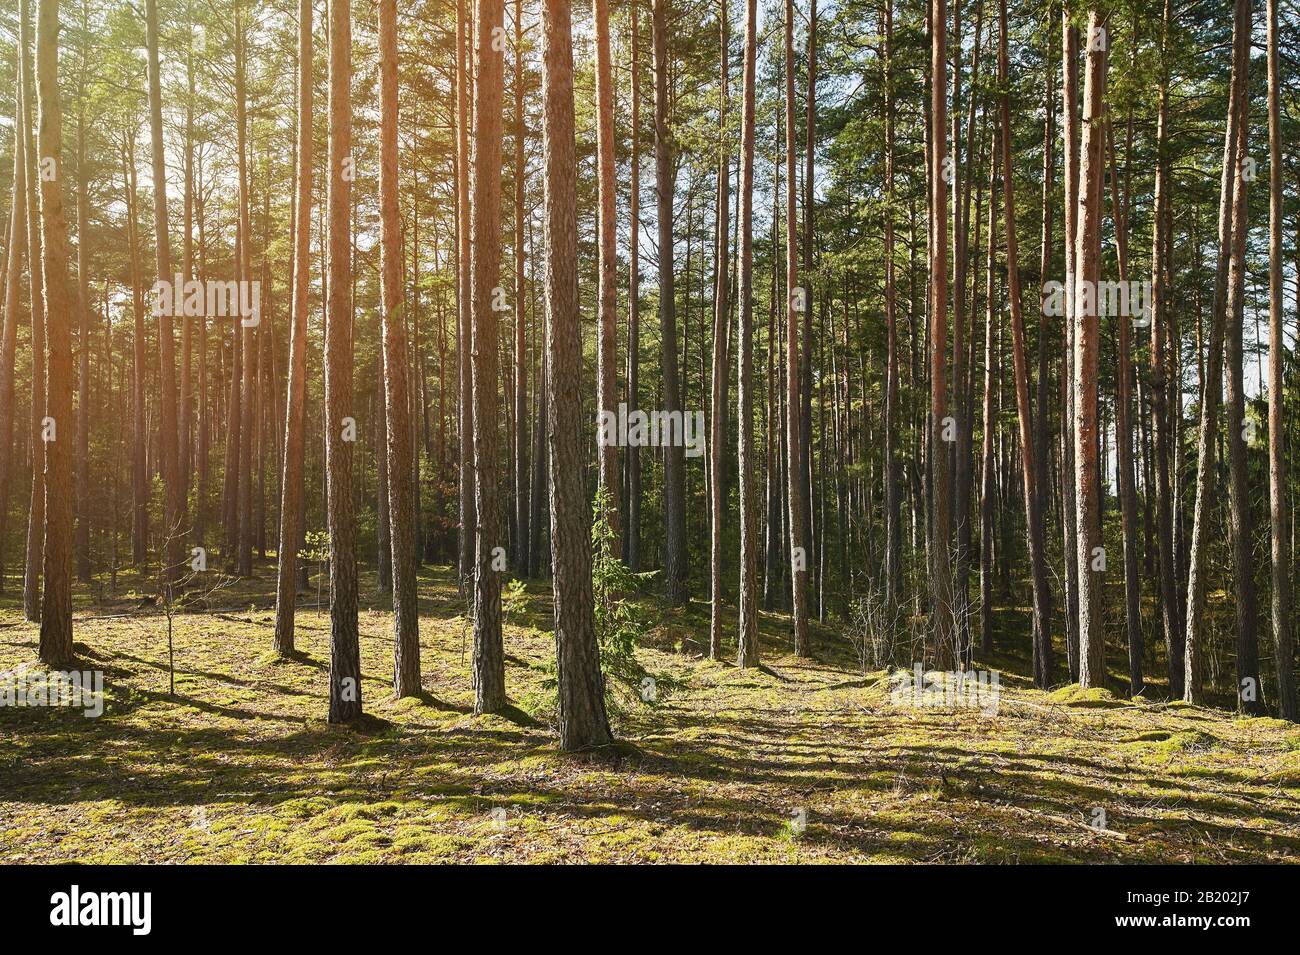 Forêt de pins dans un paysage de jour ensoleillé Banque D'Images